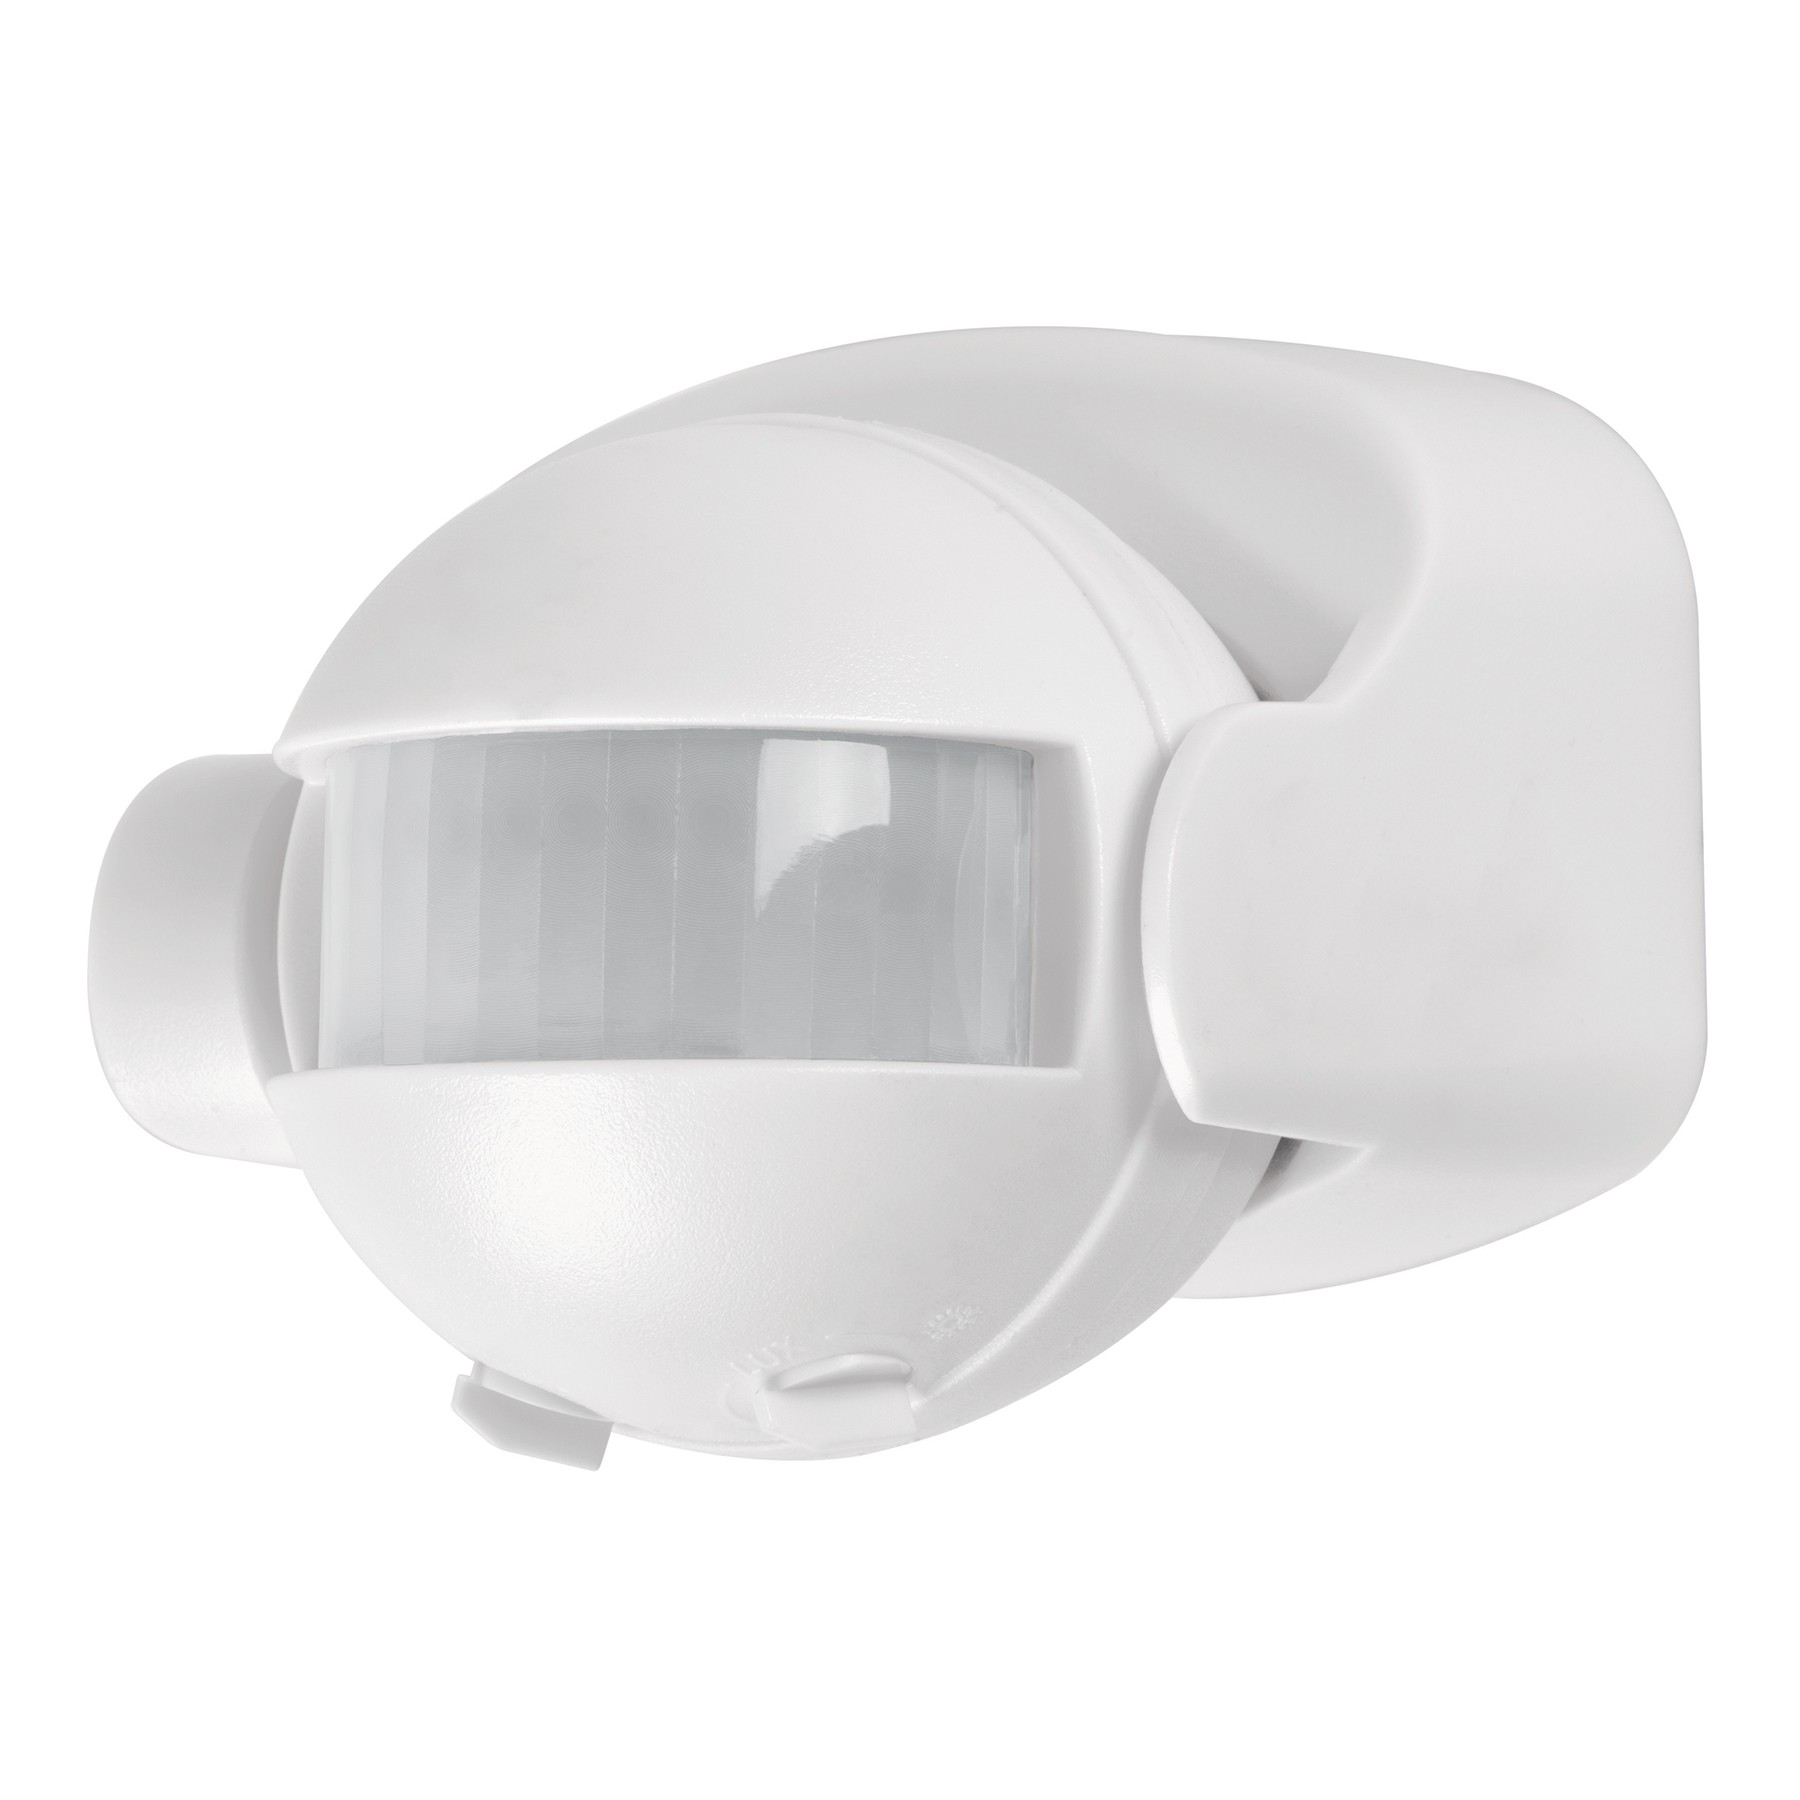 Sensor de Movimiento para Luz (Iluminacion) de 180 y 12m de dis Sensor de Movimiento  para Luz (Iluminacion) de 180º y 12m de distancia con cabezal ajustable  Tienda Online [60.253-GSC14148.] - €7.58 